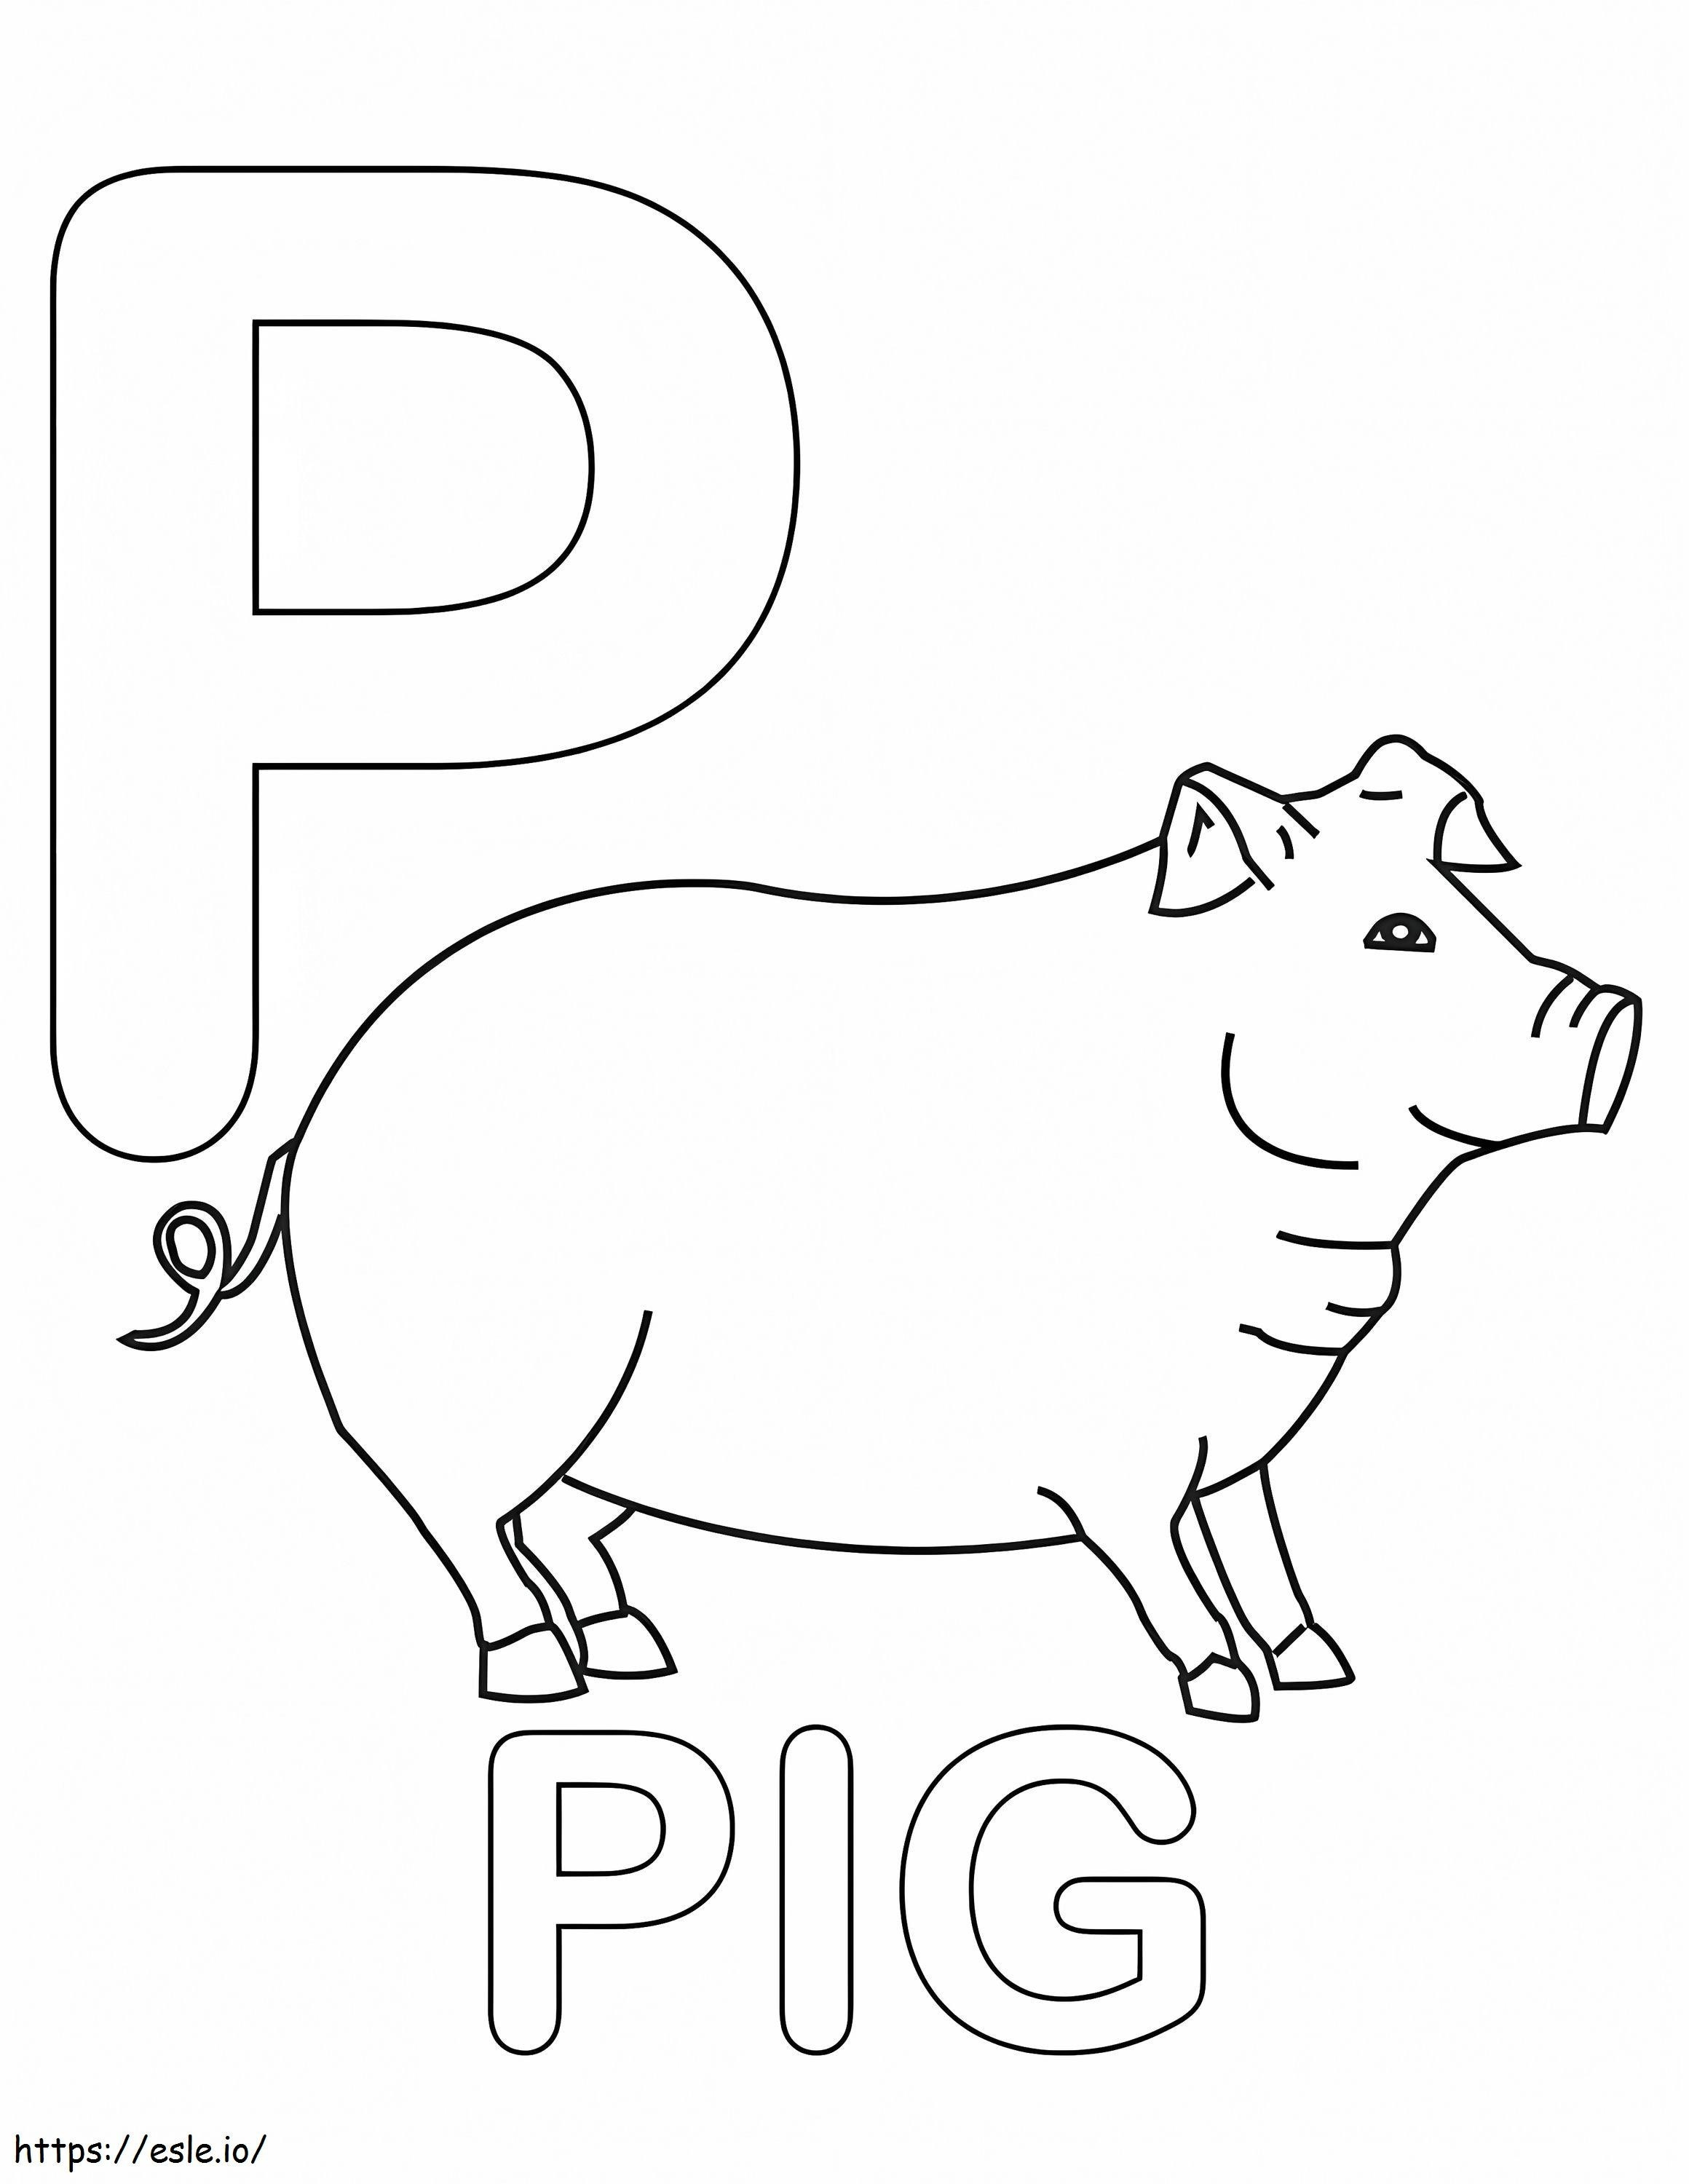 Schweinebuchstabe P ausmalbilder